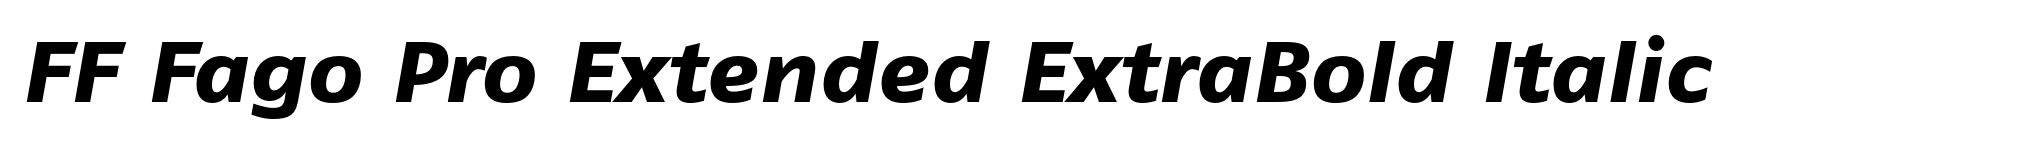 FF Fago Pro Extended ExtraBold Italic image